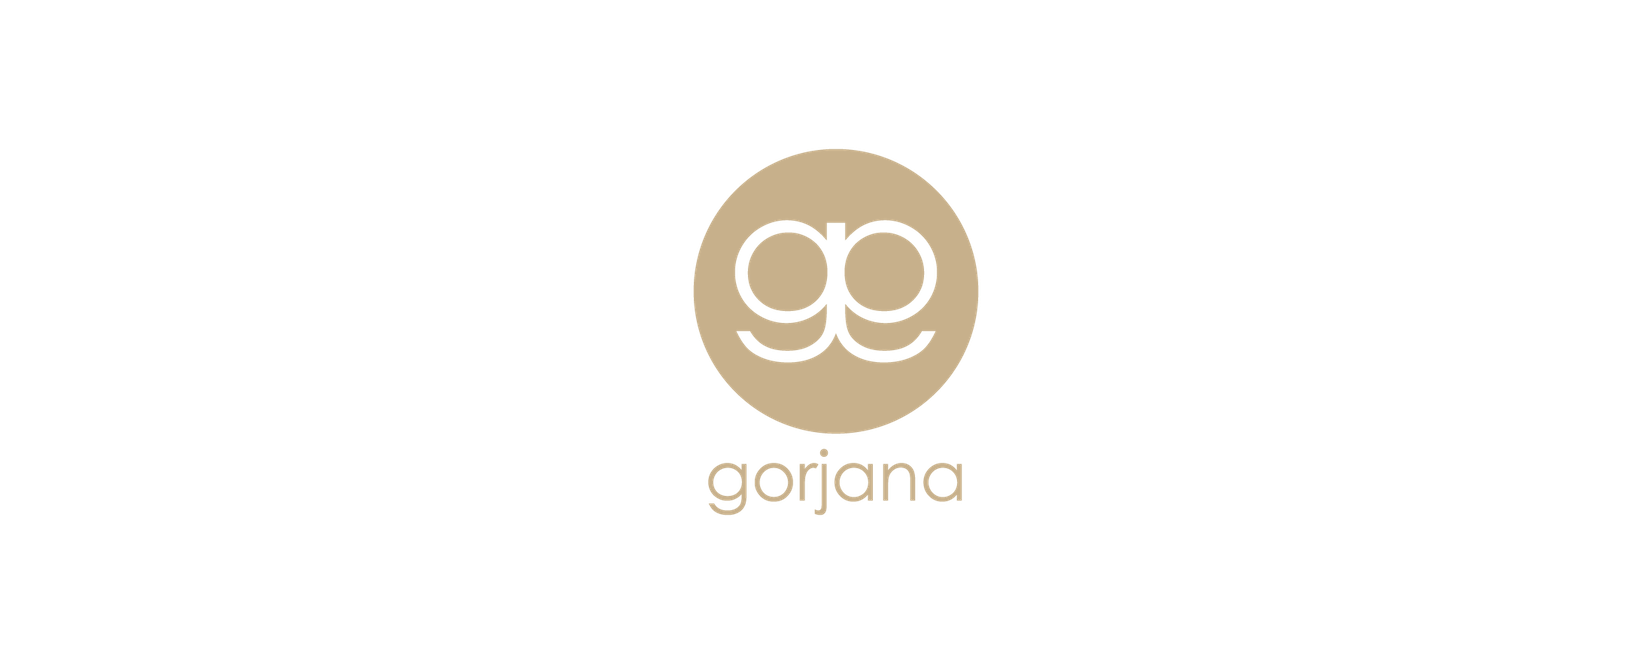 Gorjana Review: The Jewelry Brand for Minimalist Style